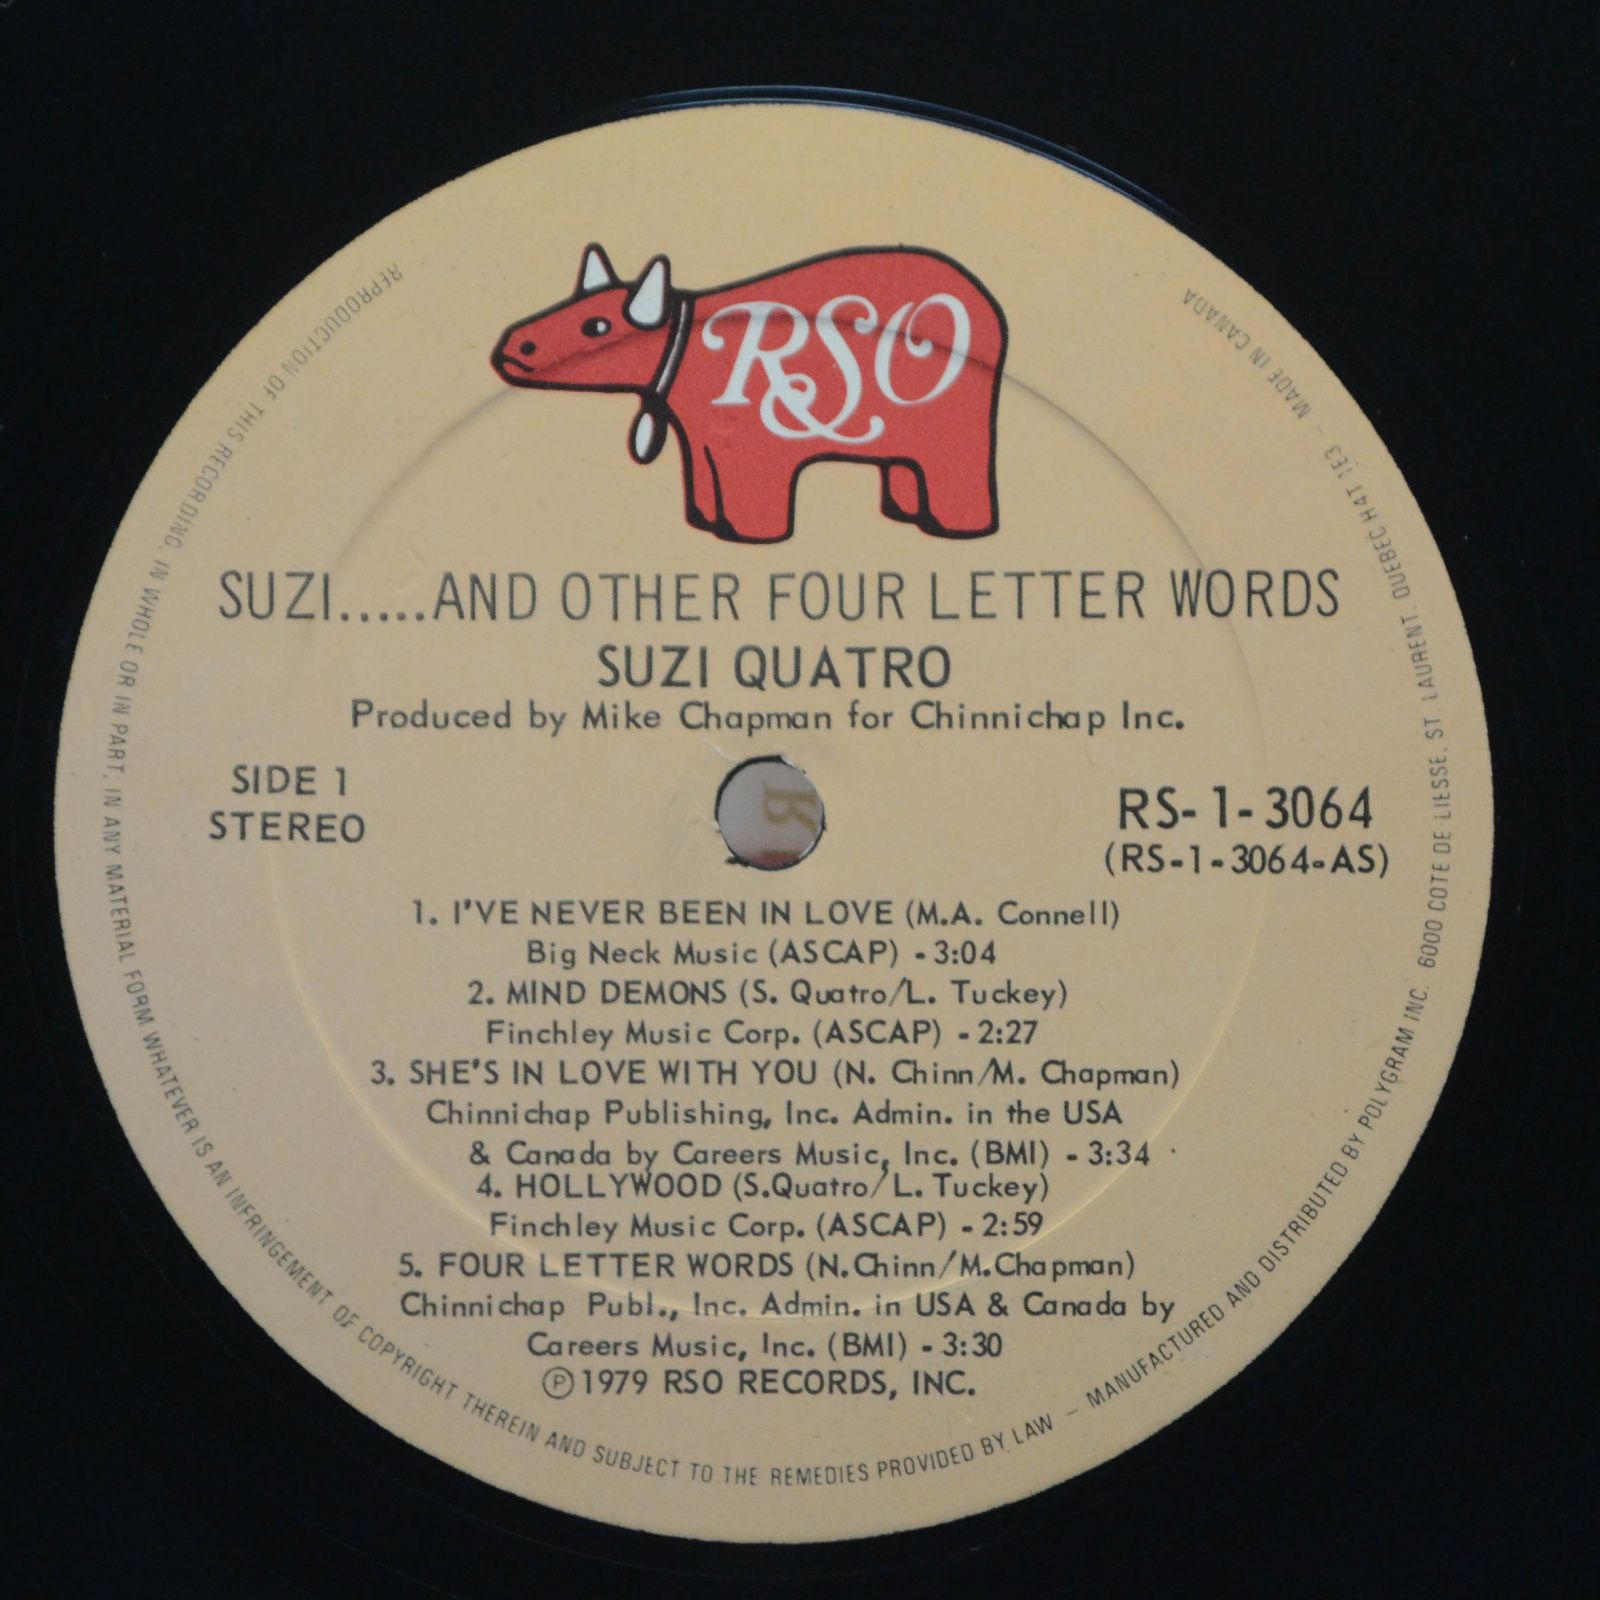 Suzi Quatro — Suzi... And Other Four Letter Words, 1979